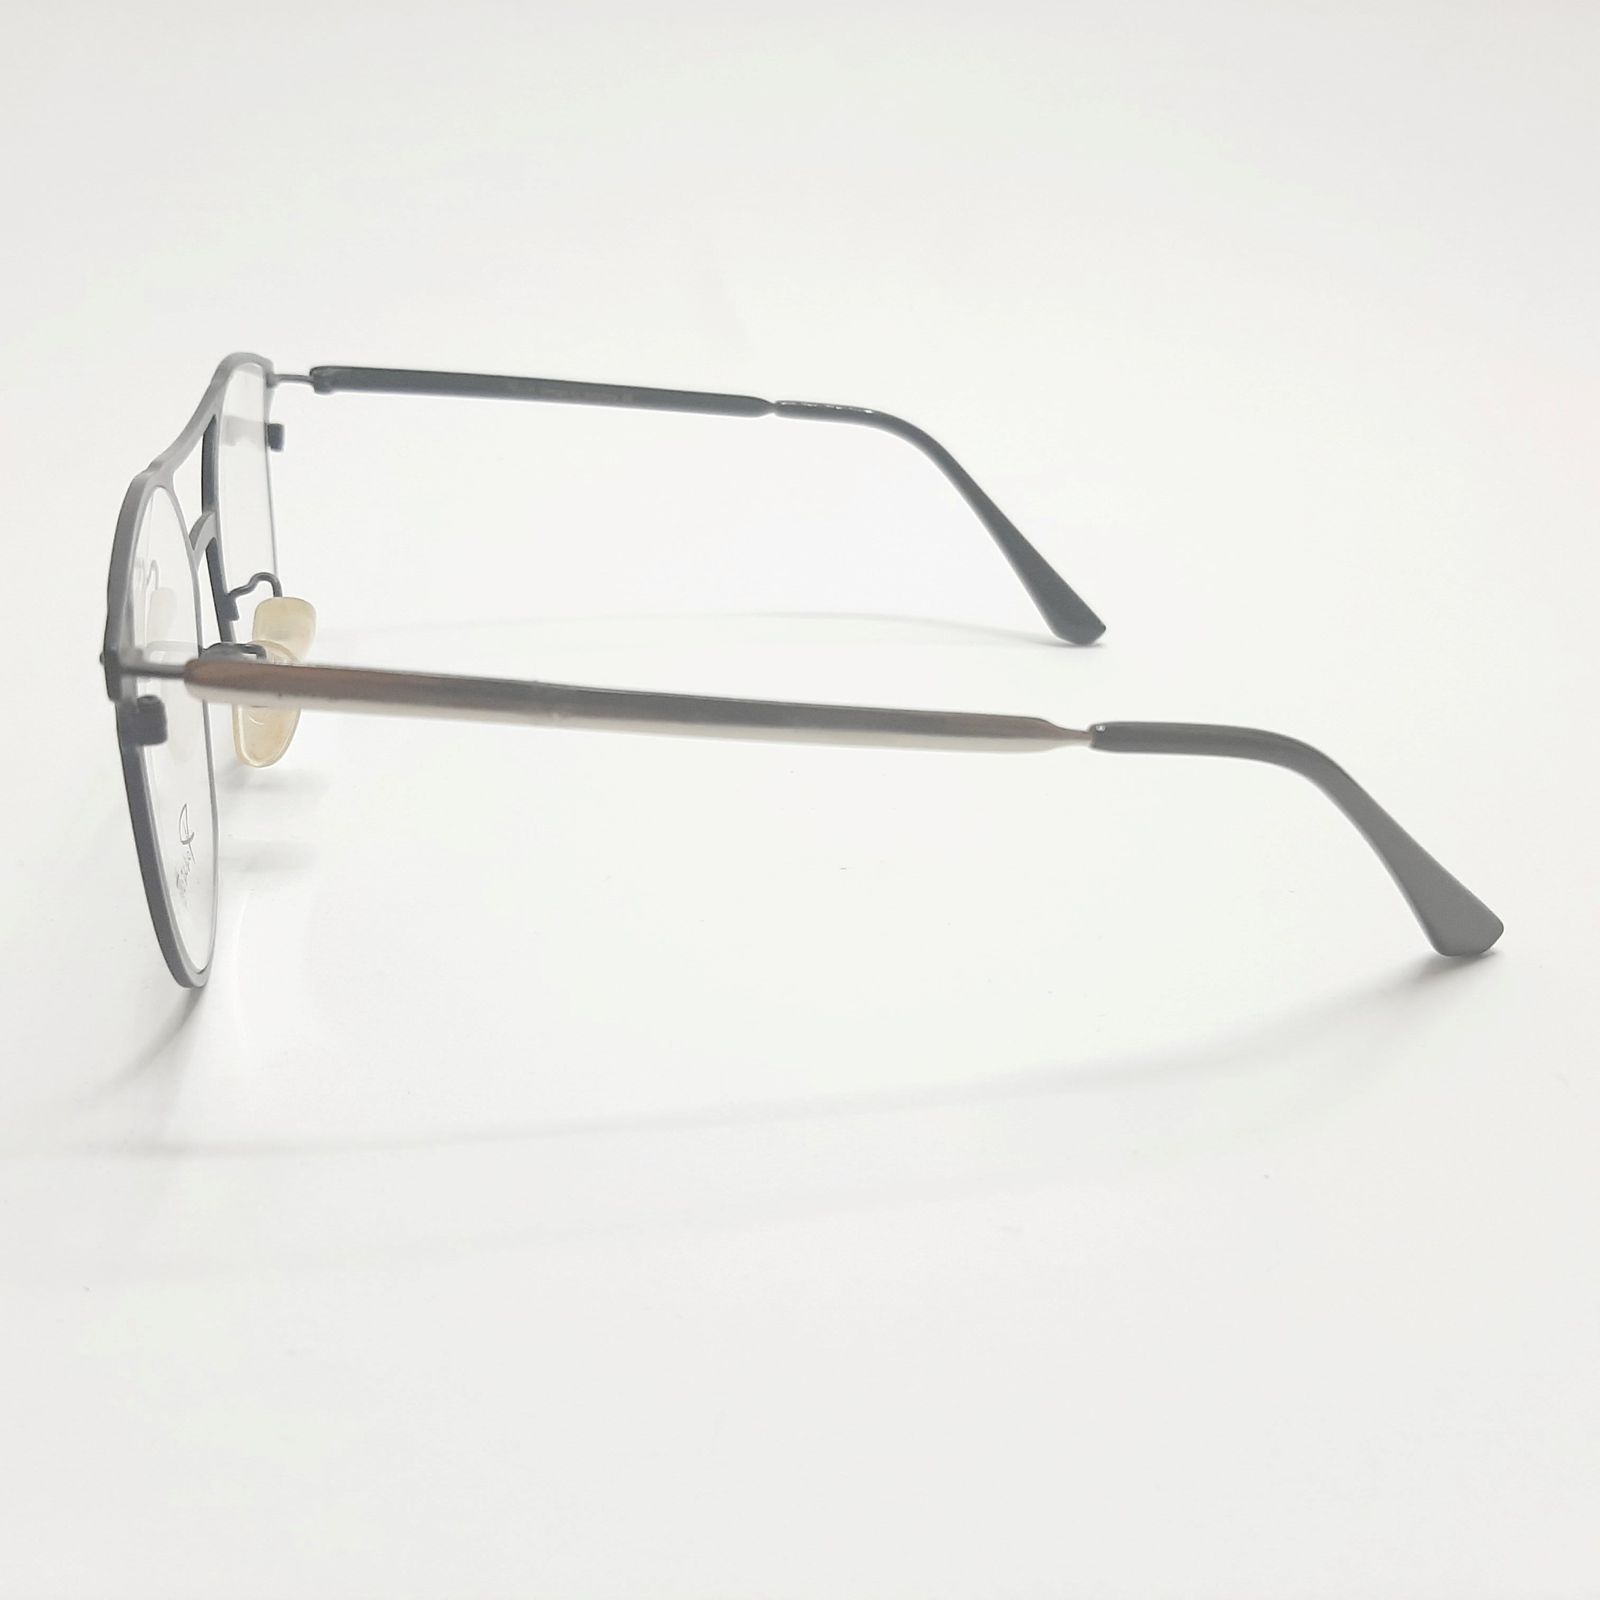 فریم عینک طبی پاواروتی مدل P82001c4 -  - 5